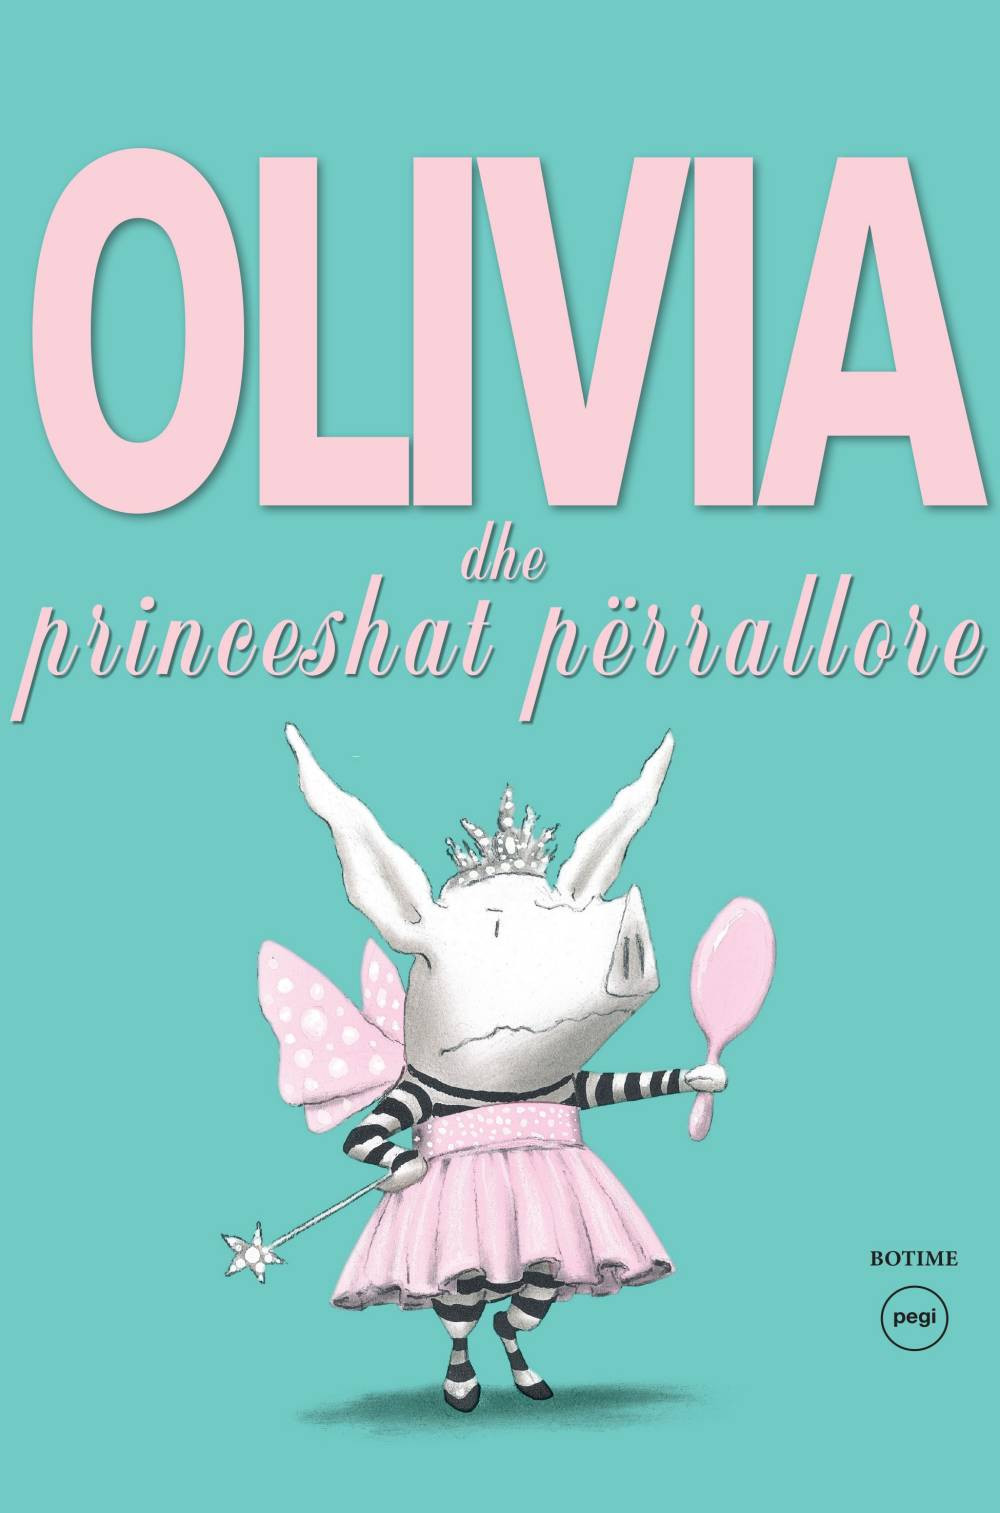 Olivia dhe princesha perrallore